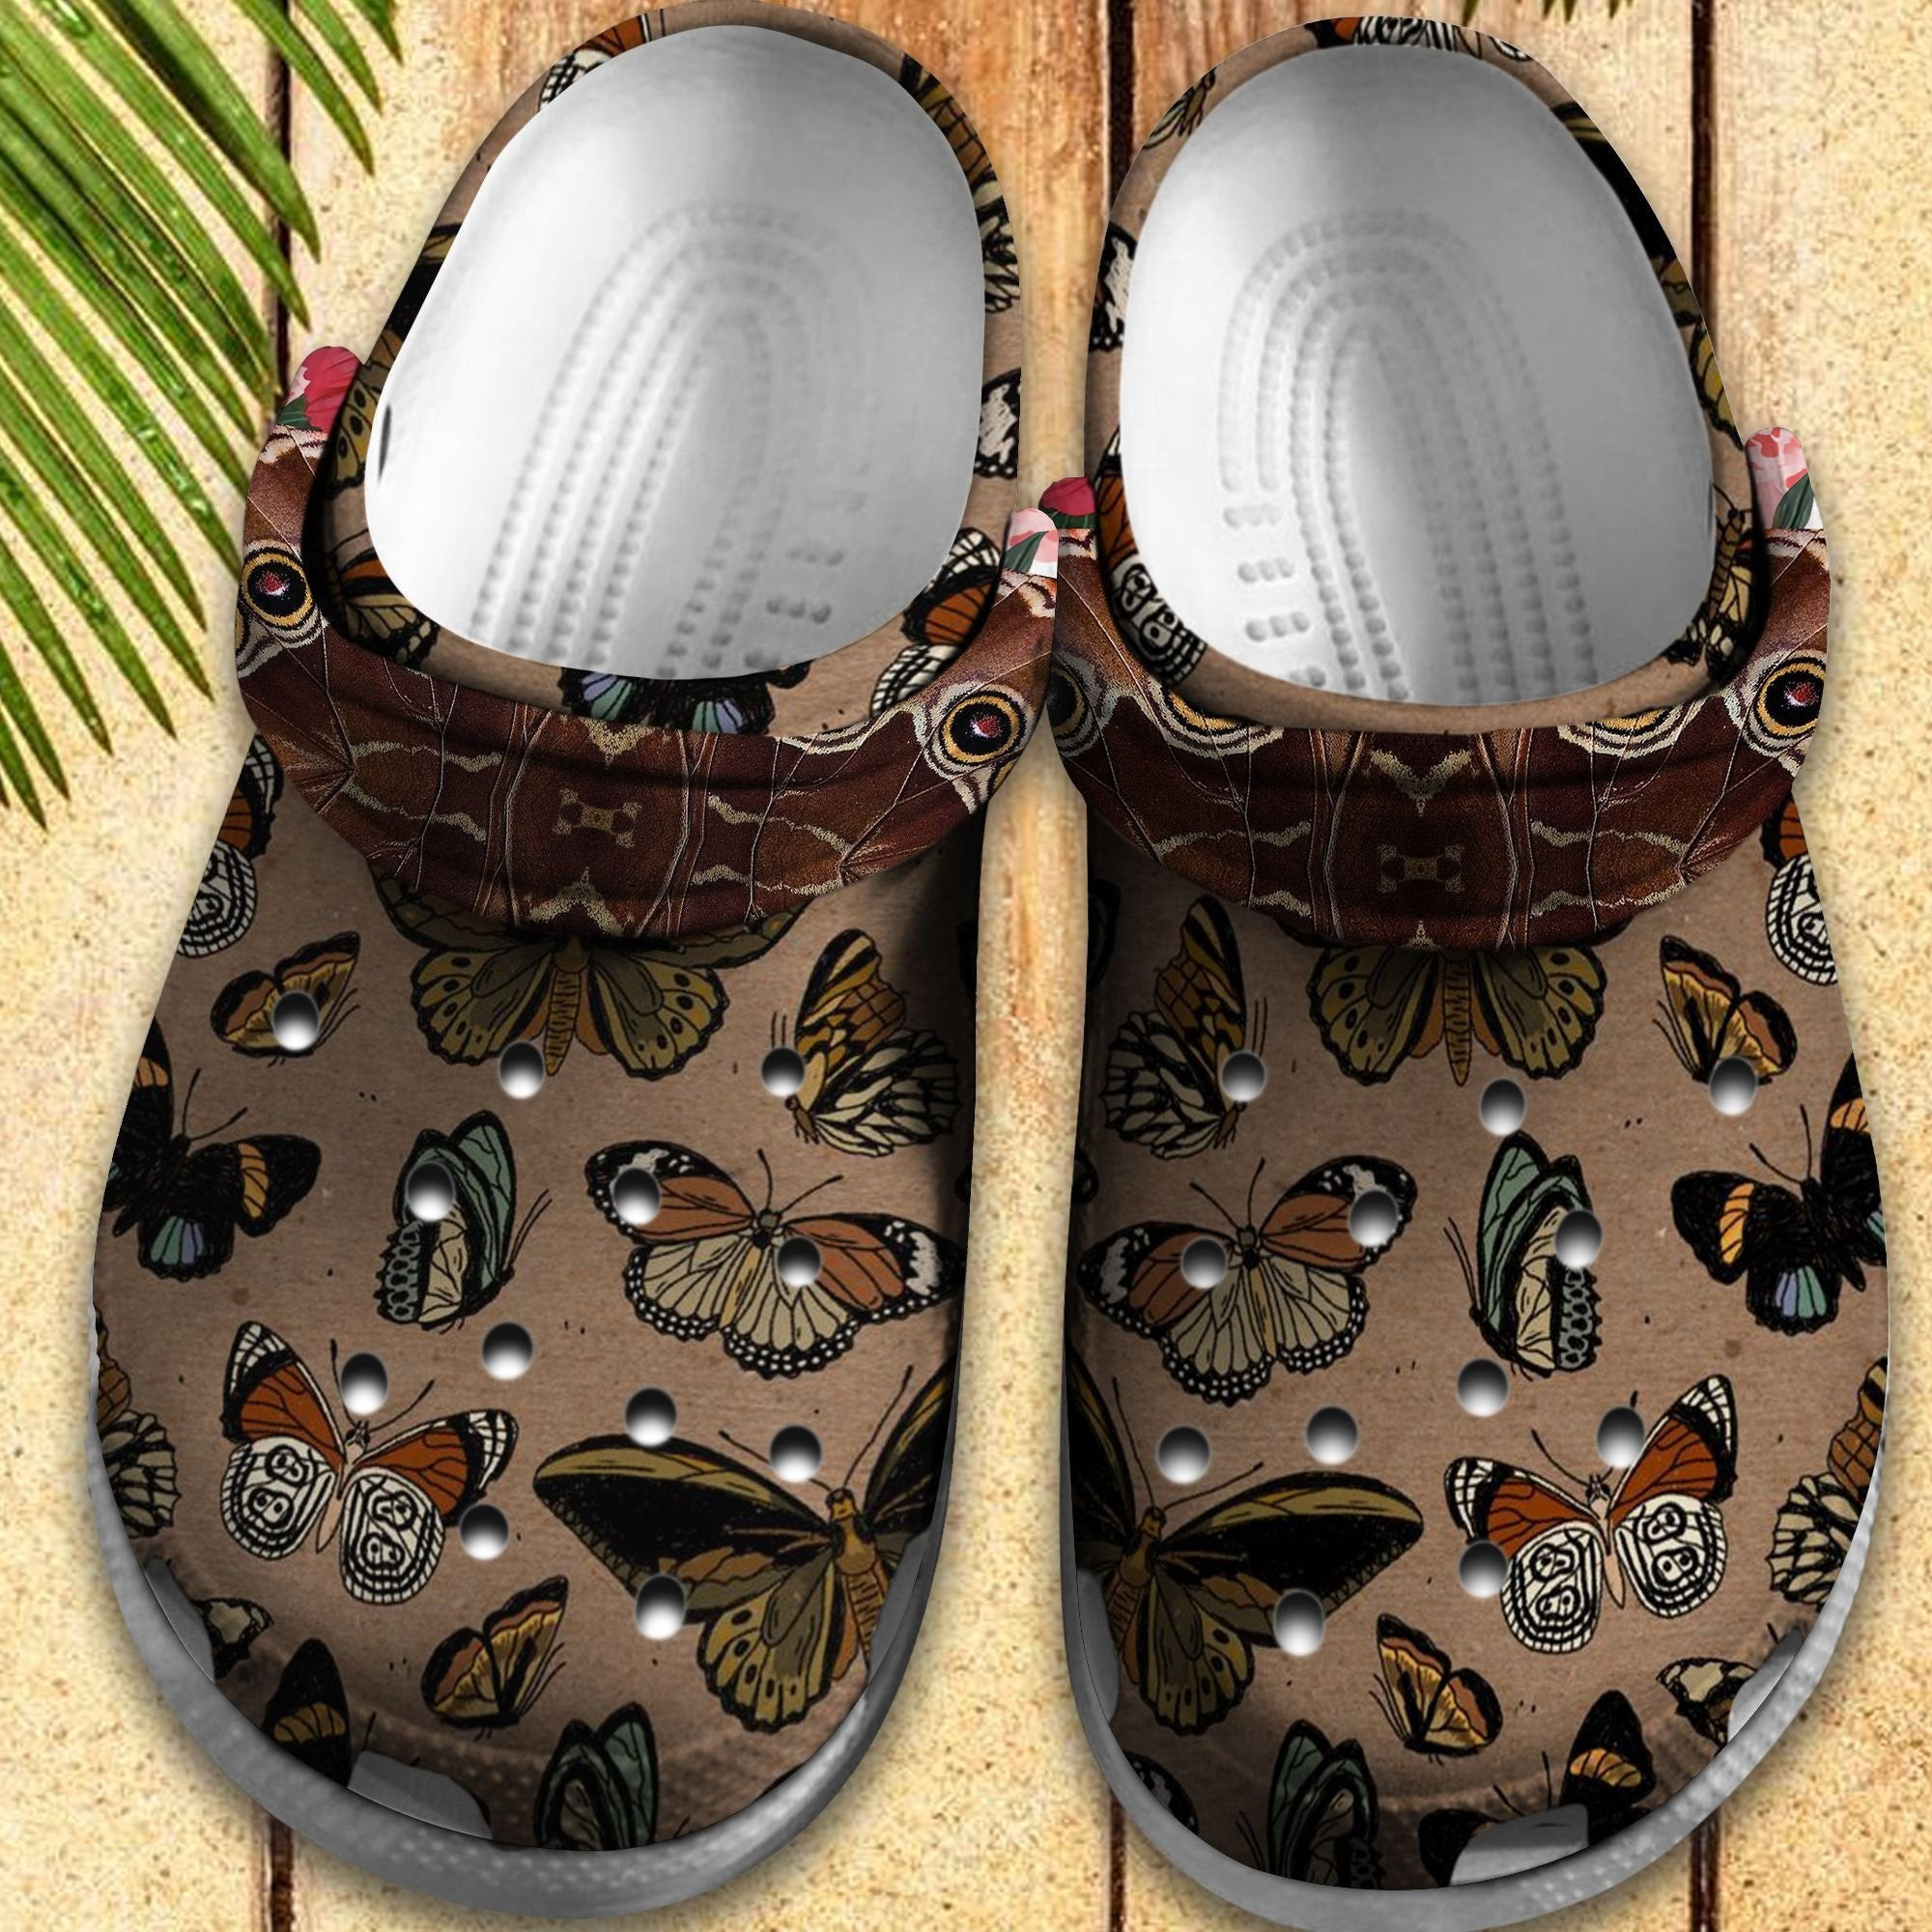 Butterflies Vintage Shoes – Butterflies Garden Crocs Clog Gift For Women Girl Grandma Mother